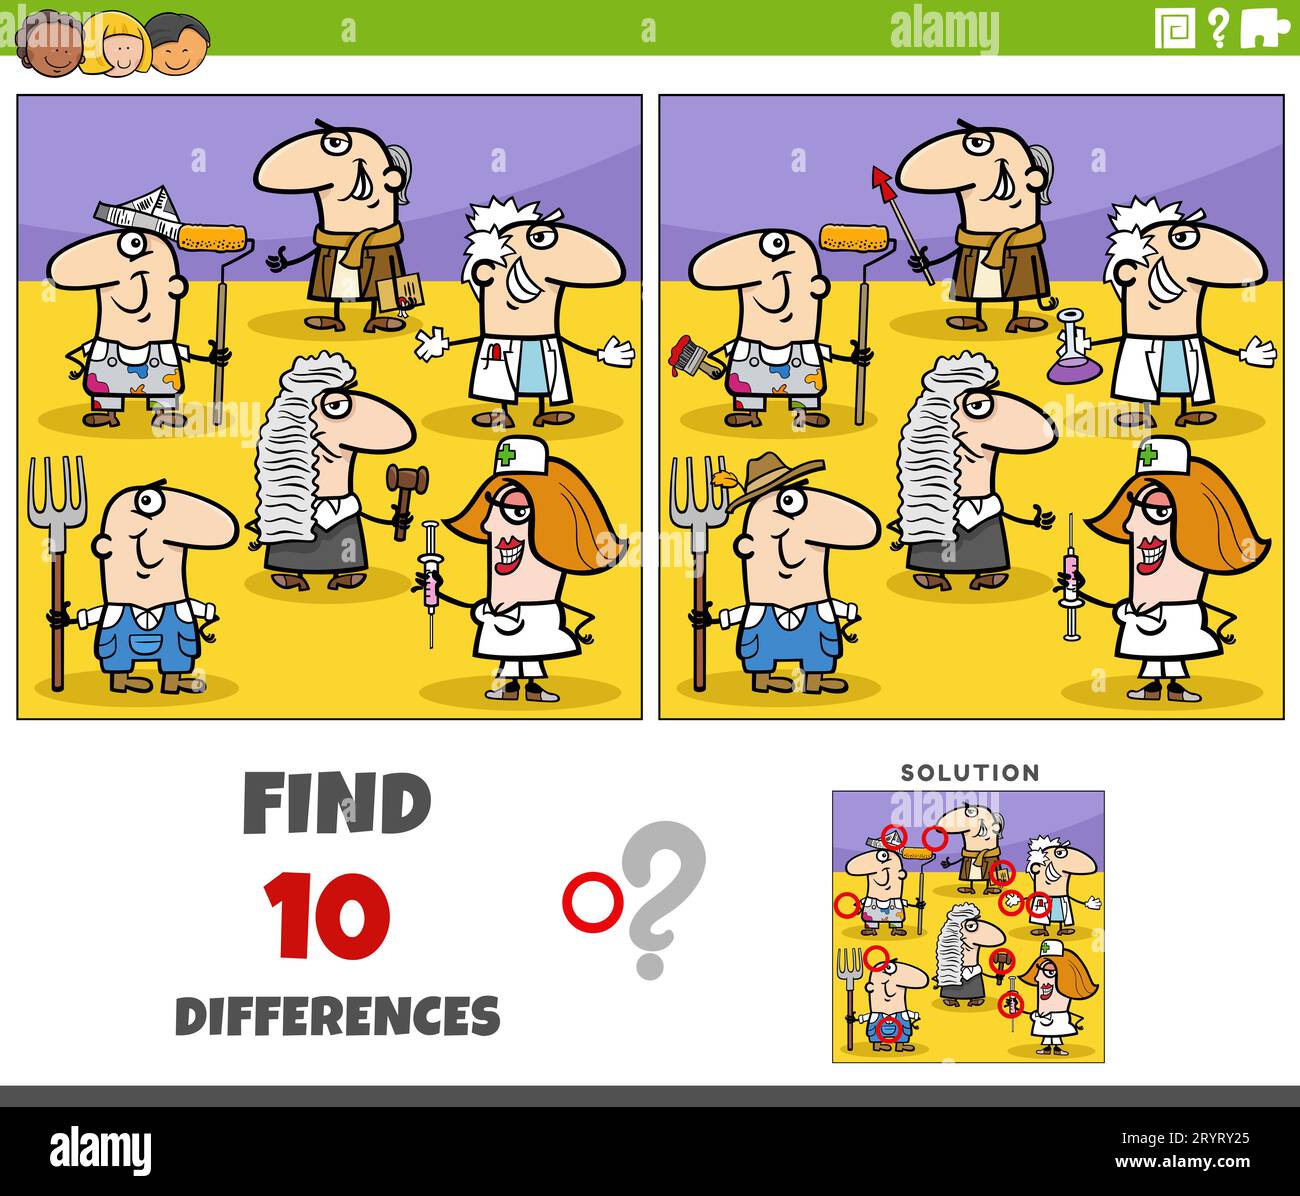 Cartoon-Darstellung zur Ermittlung der Unterschiede zwischen Bilderpädagogischen Spielen mit Personen verschiedener Berufe Charaktergruppe Stockfoto